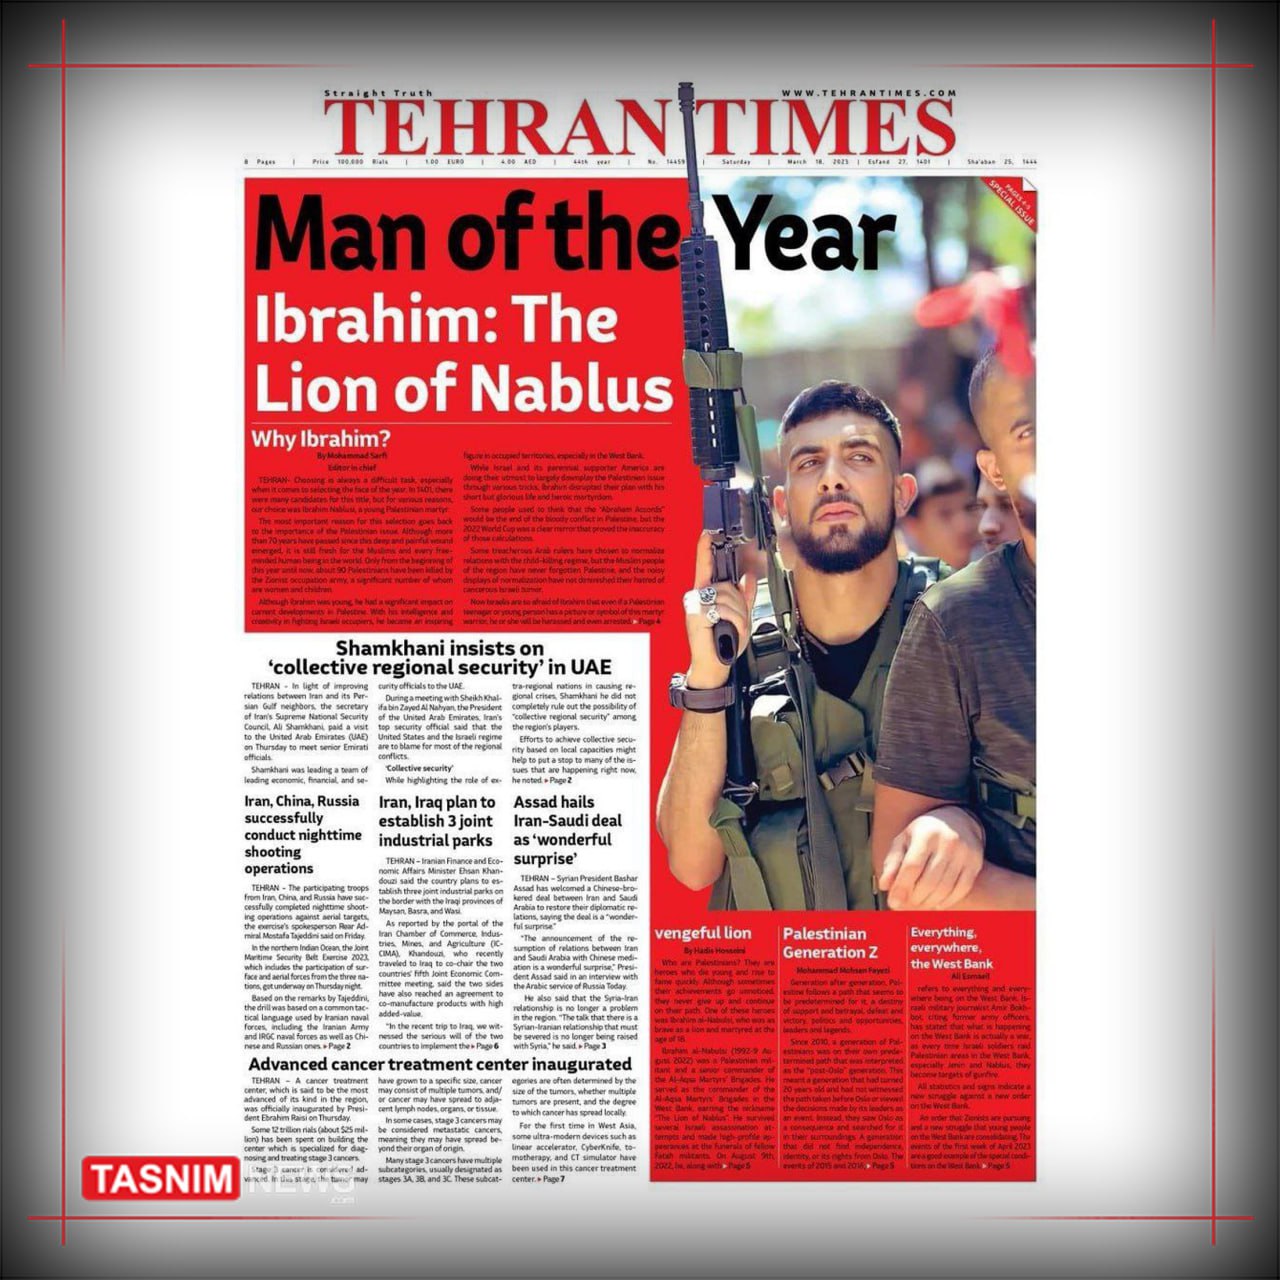 شخصیت سال تهران تایمز؛ شهیدی که تفنگش را زمین نگذاشت و شیر نابلس شد